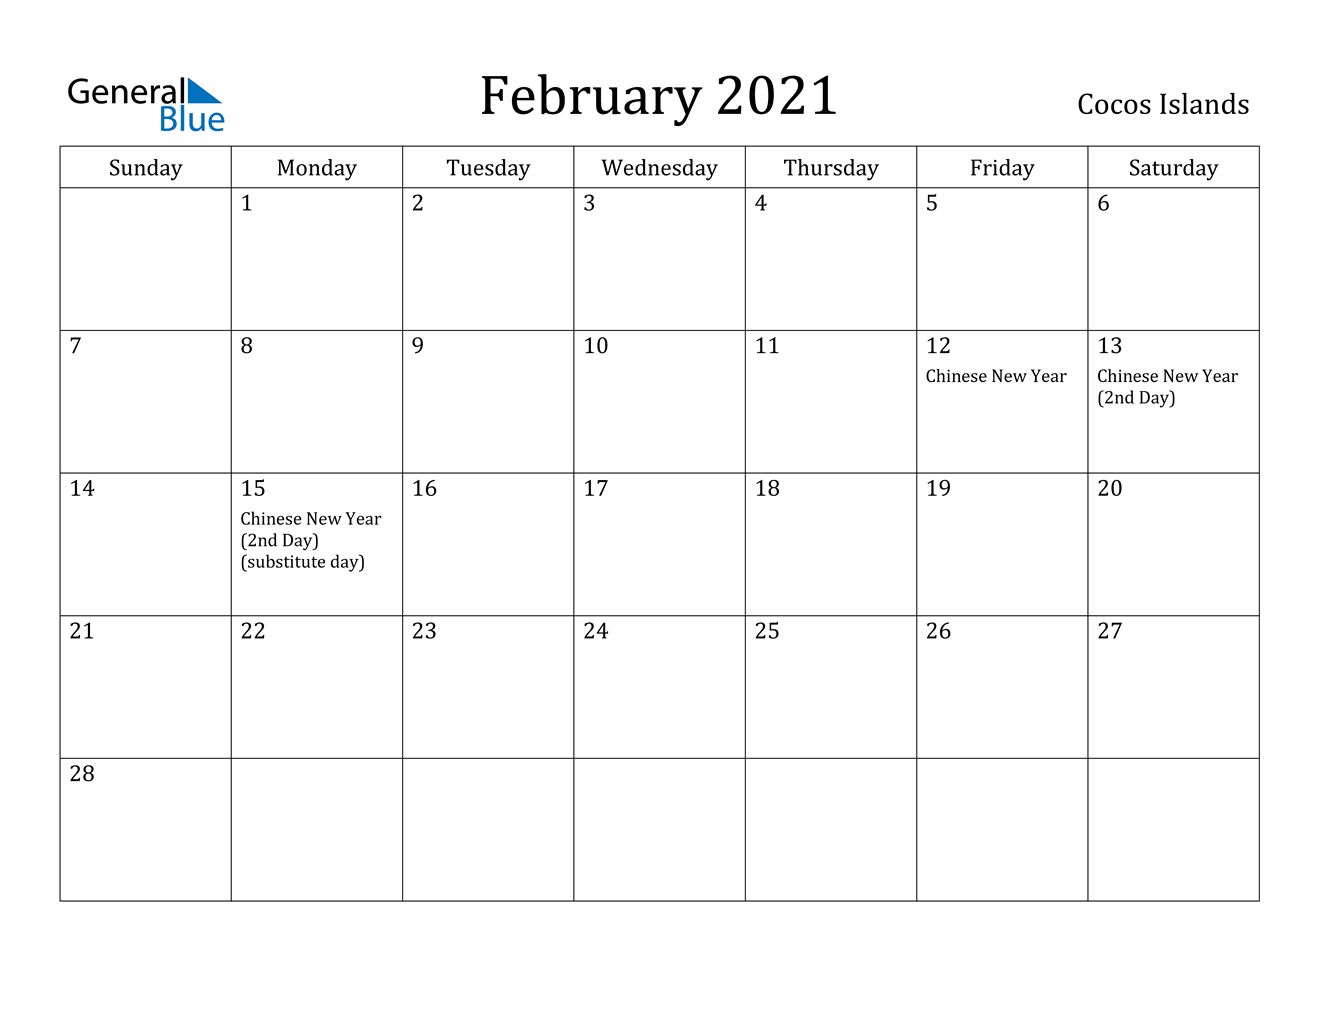 February 2021 Calendar - Cocos Islands